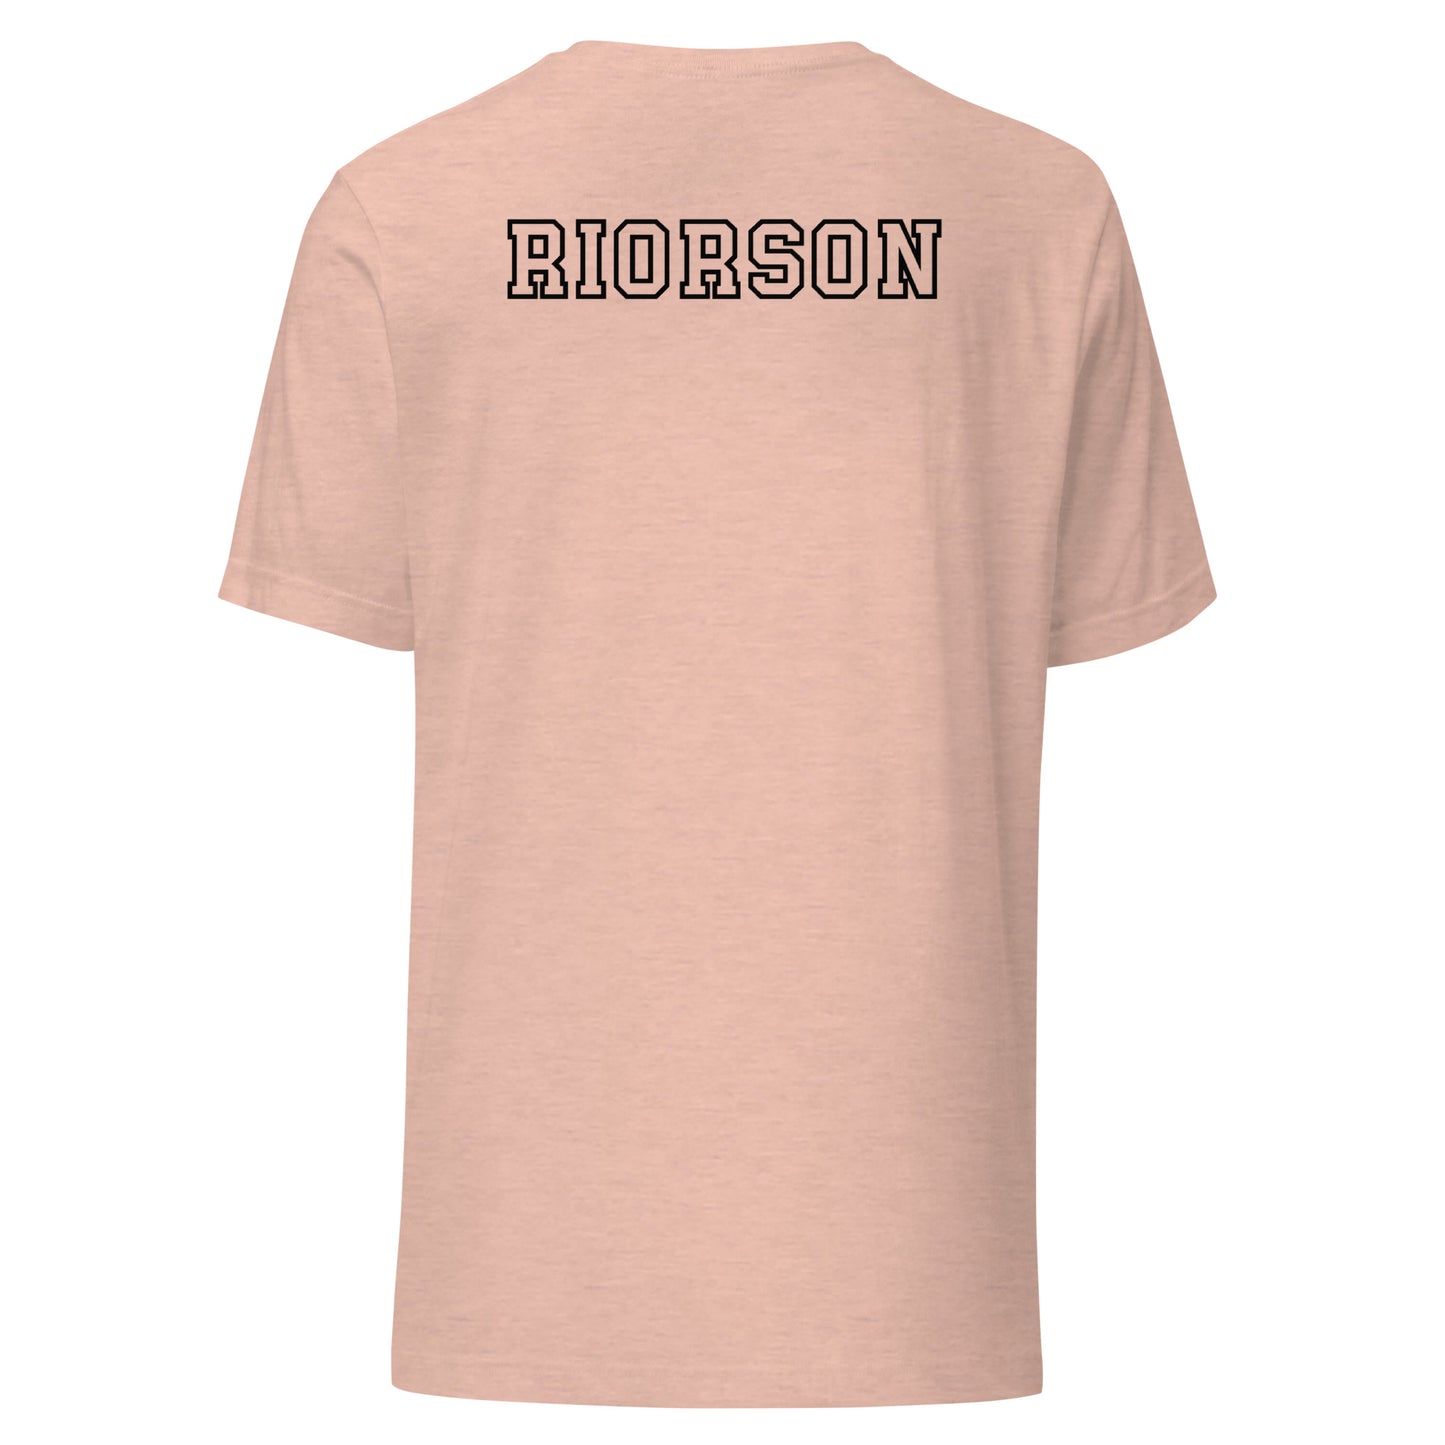 Xaden Riorson T-shirt